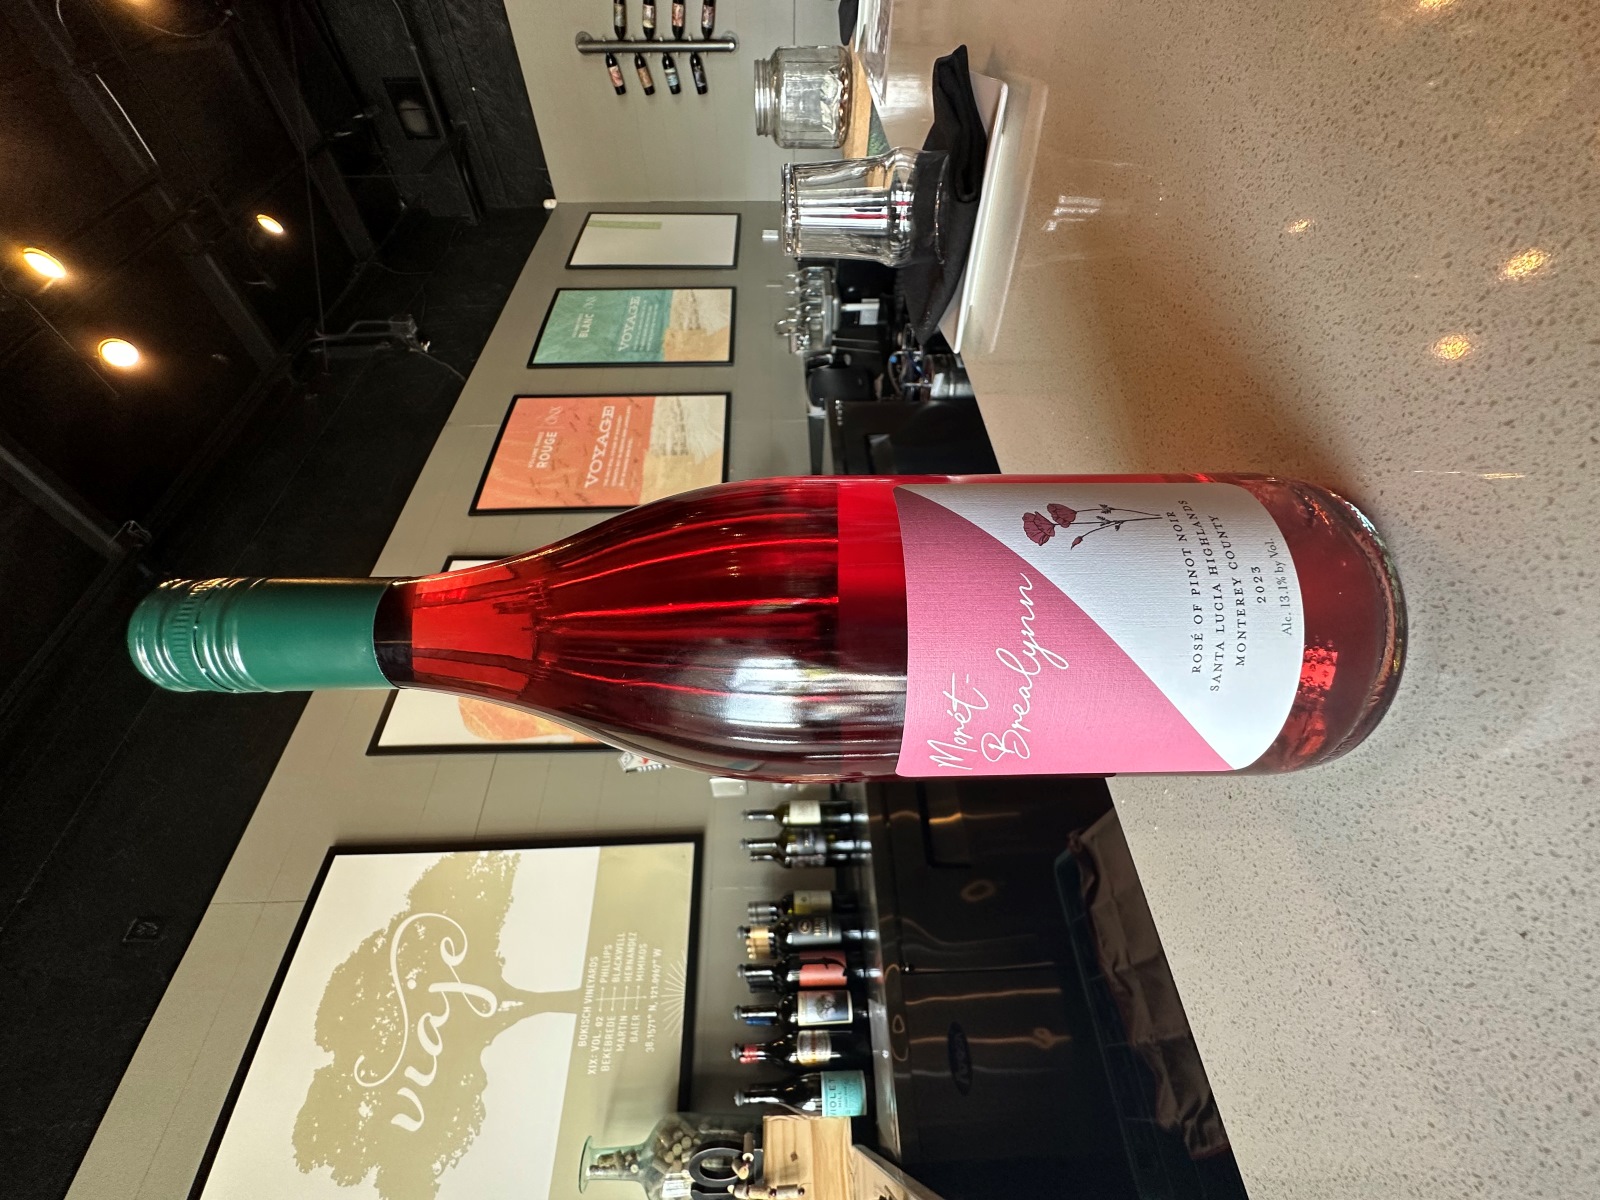 A bottle of Morét-Brealynn rosé sits on a table